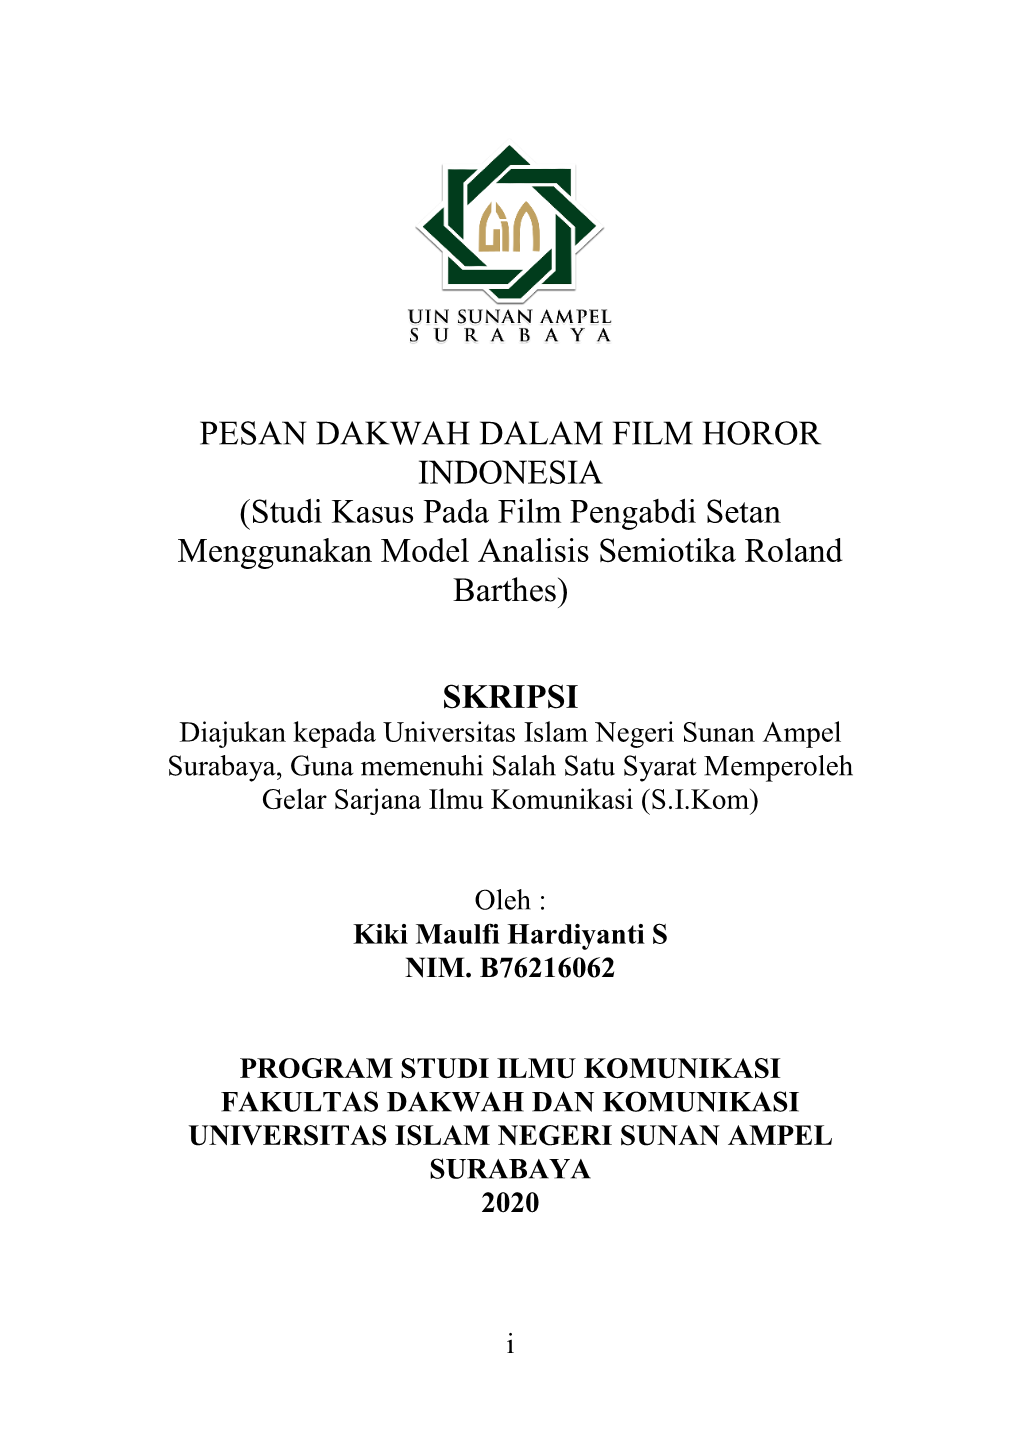 PESAN DAKWAH DALAM FILM HOROR INDONESIA (Studi Kasus Pada Film Pengabdi Setan Menggunakan Model Analisis Semiotika Roland Barthes)